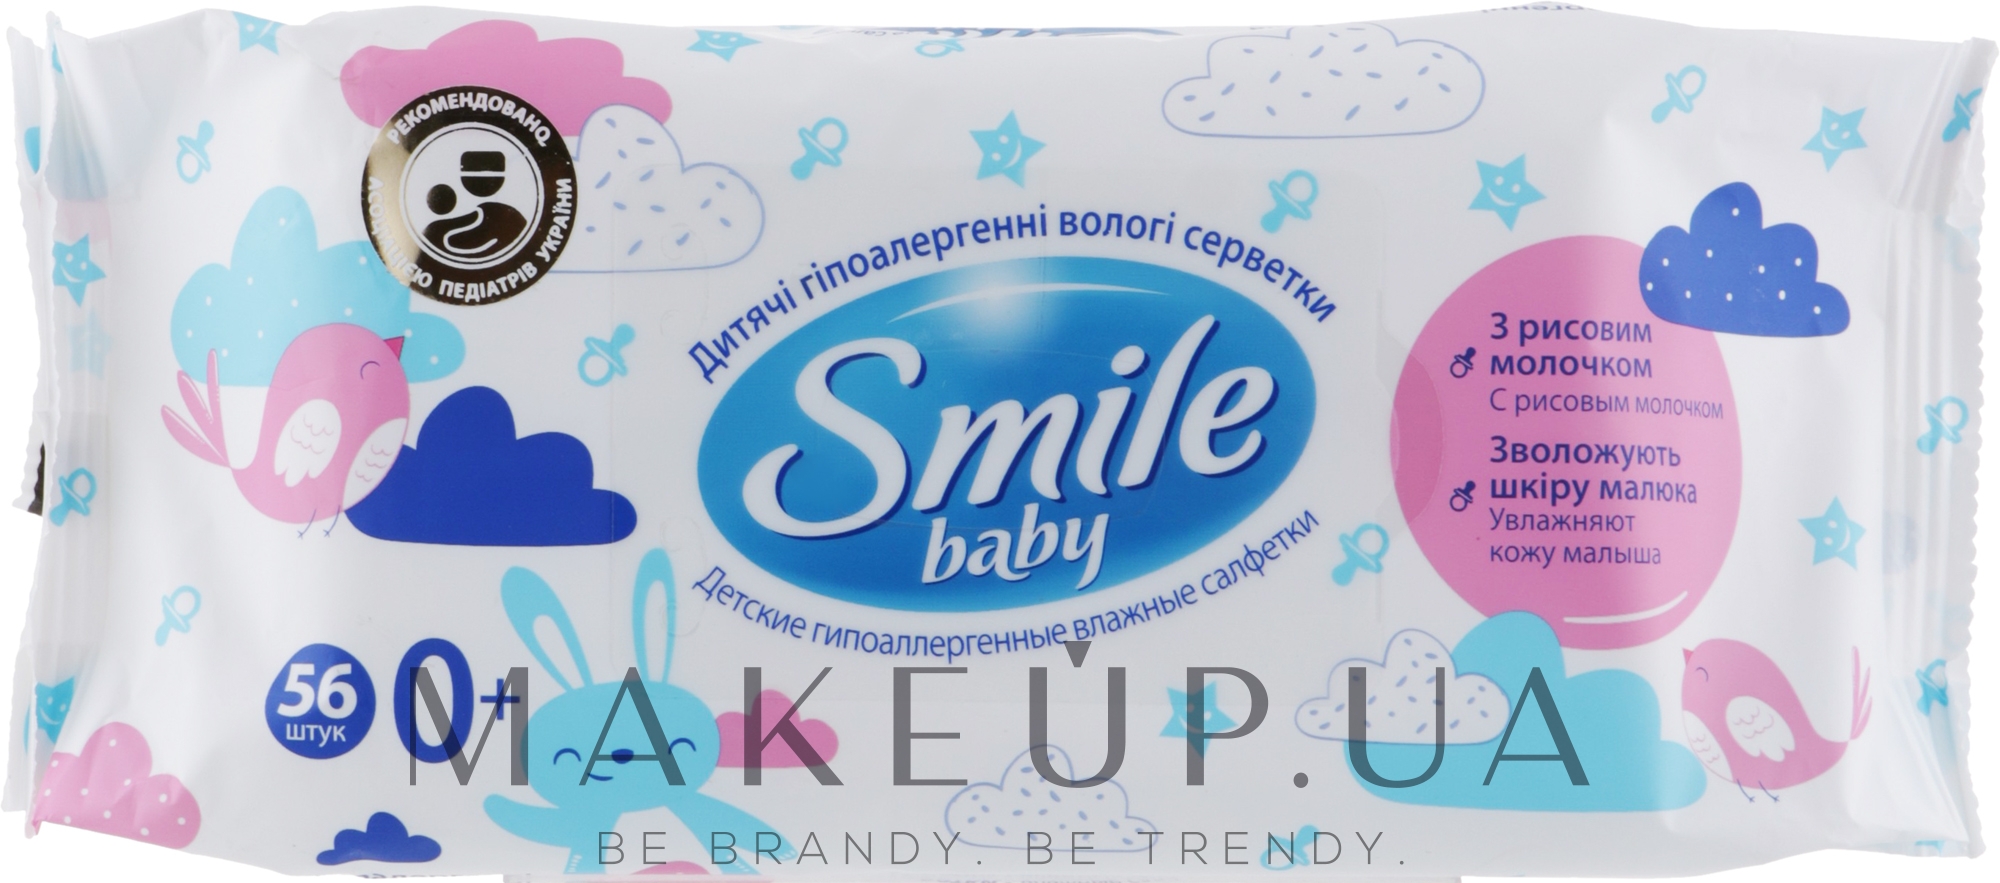 Детские гипоаллергенные влажные салфетки с рисовым молочком, 56 шт - Smile Ukraine Baby  — фото 56шт